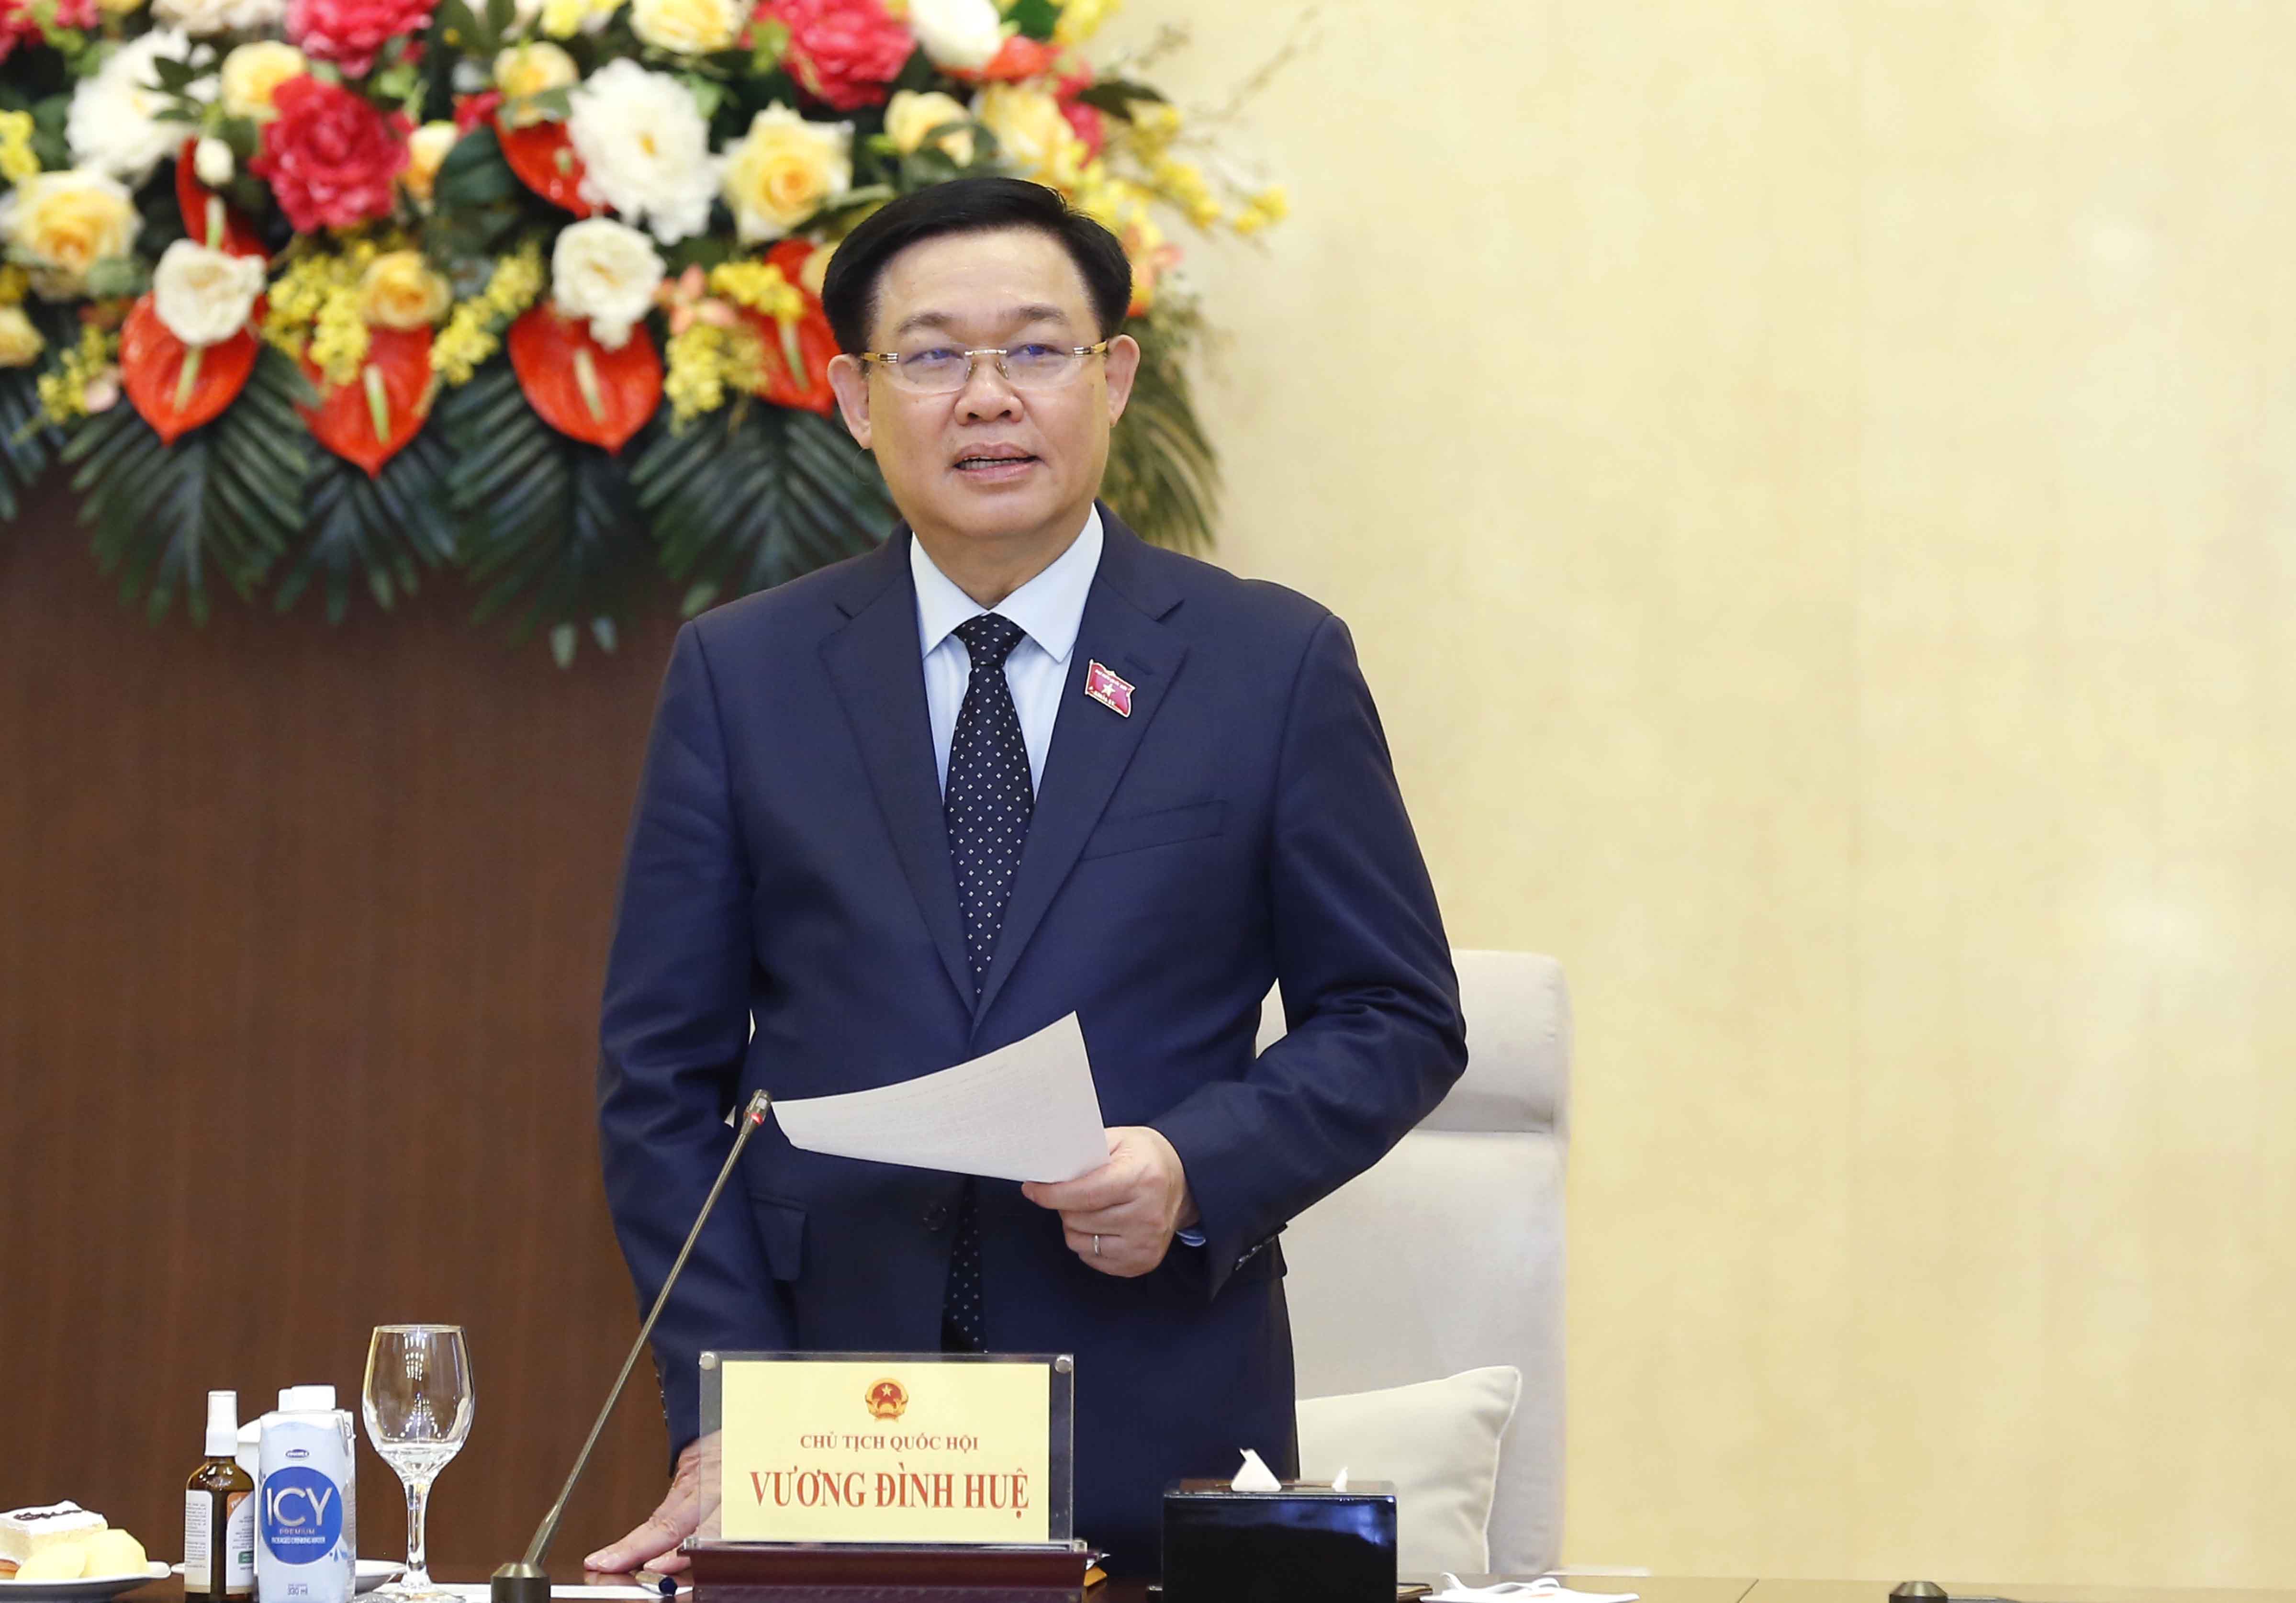 Chủ tịch Quốc hội Vương Đình Huệ làm việc với lãnh đạo chủ chốt tỉnh Ninh Thuận